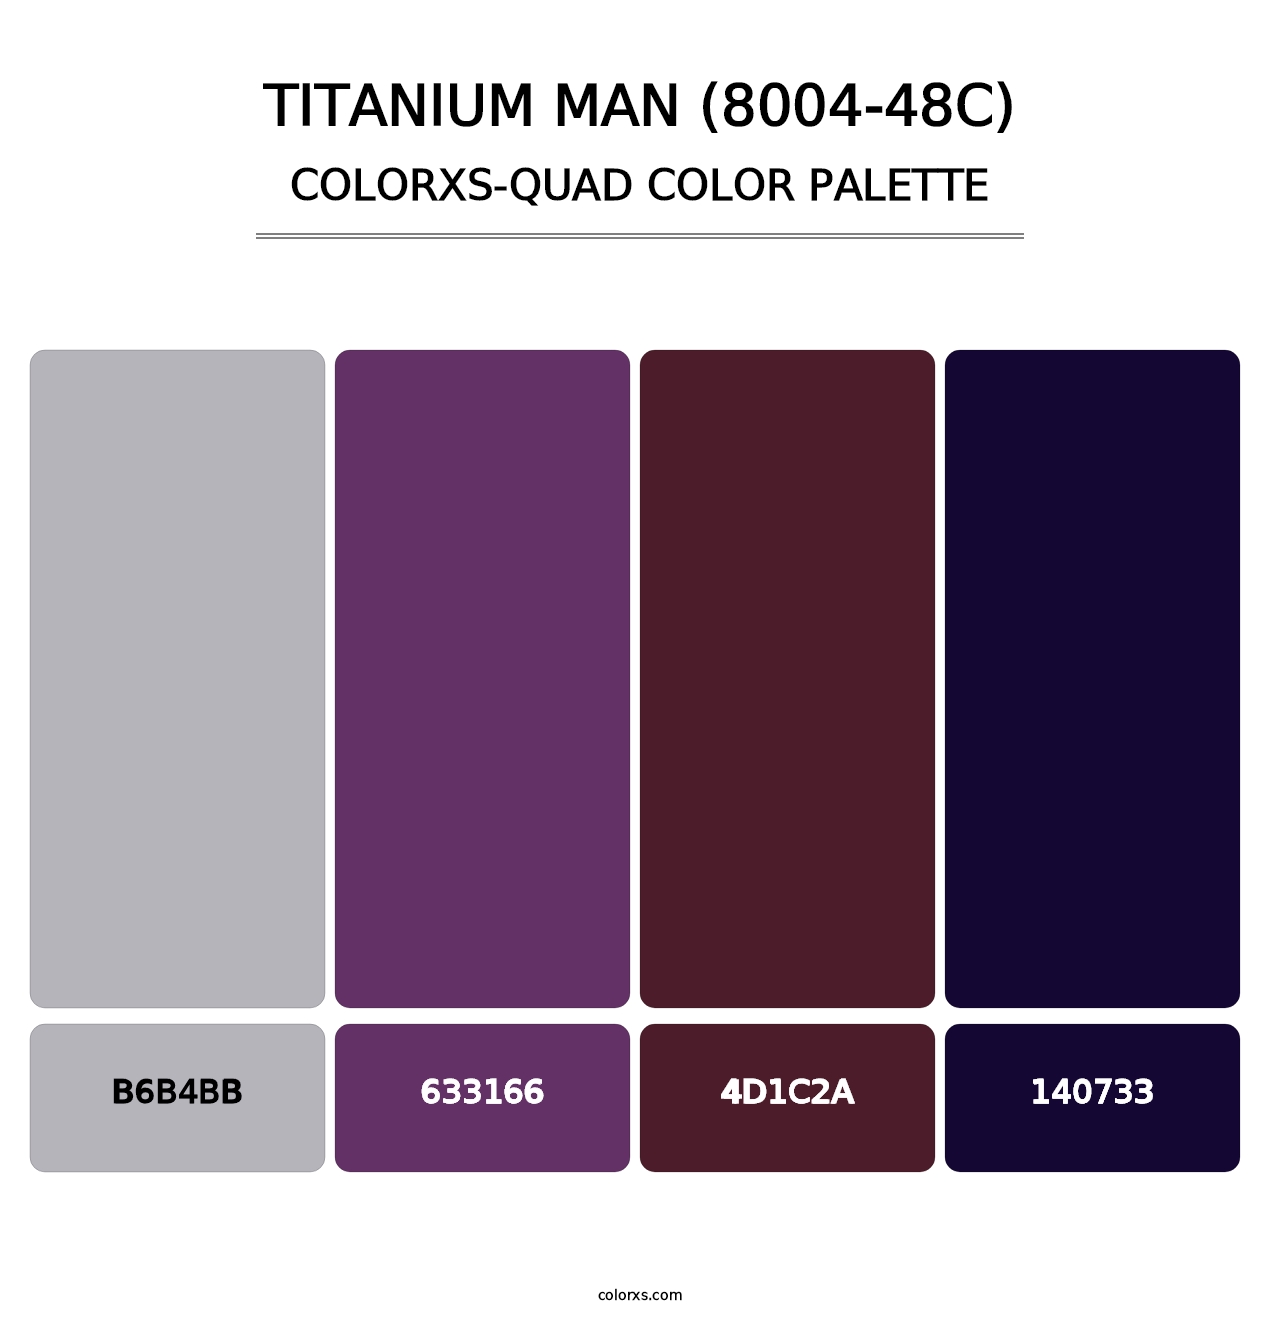 Titanium Man (8004-48C) - Colorxs Quad Palette